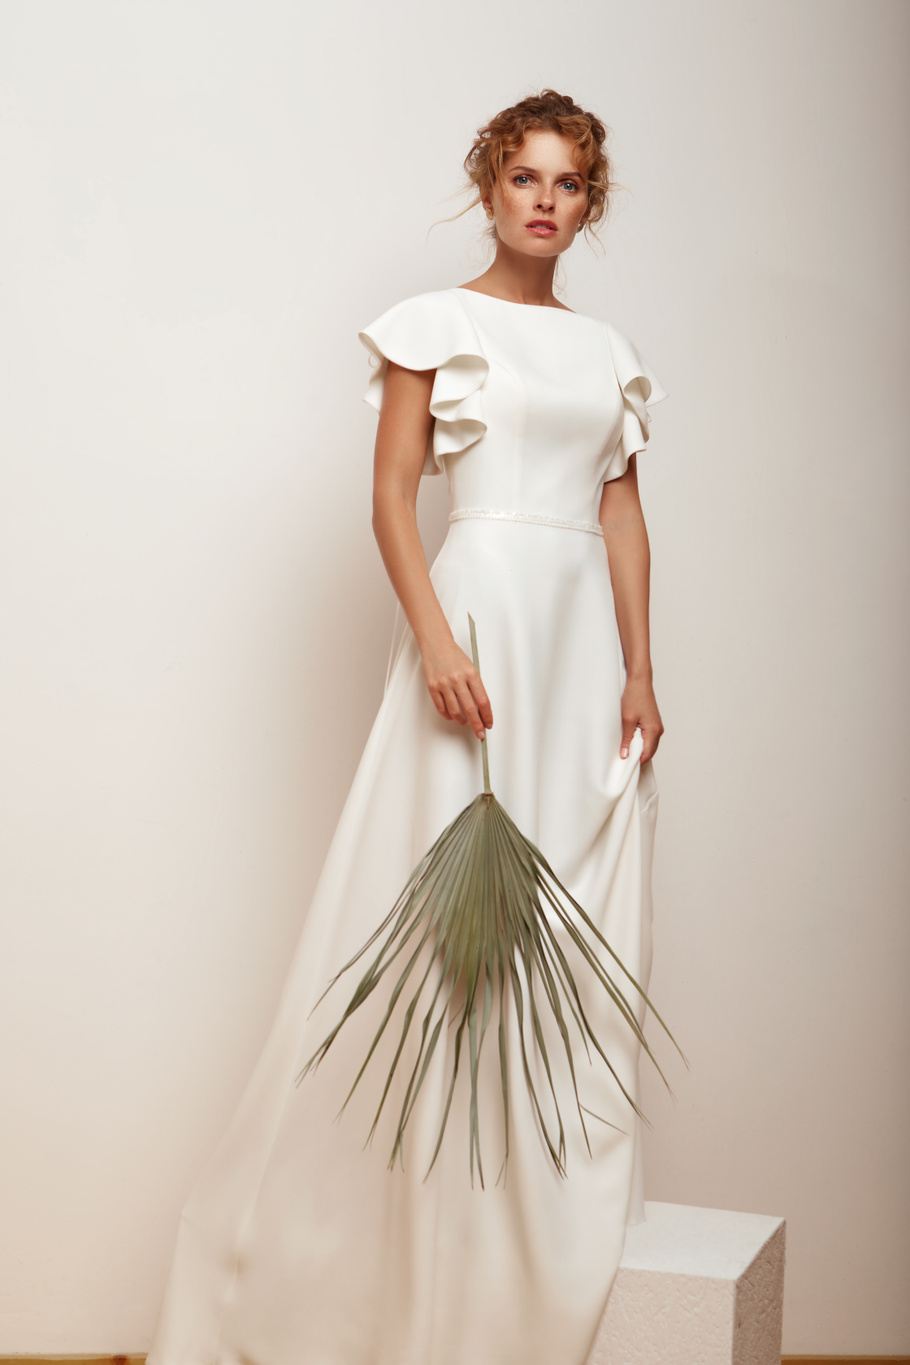 Купить свадебное платье «Ситлин» Мэрри Марк из коллекции 2020 года в Краснодаре